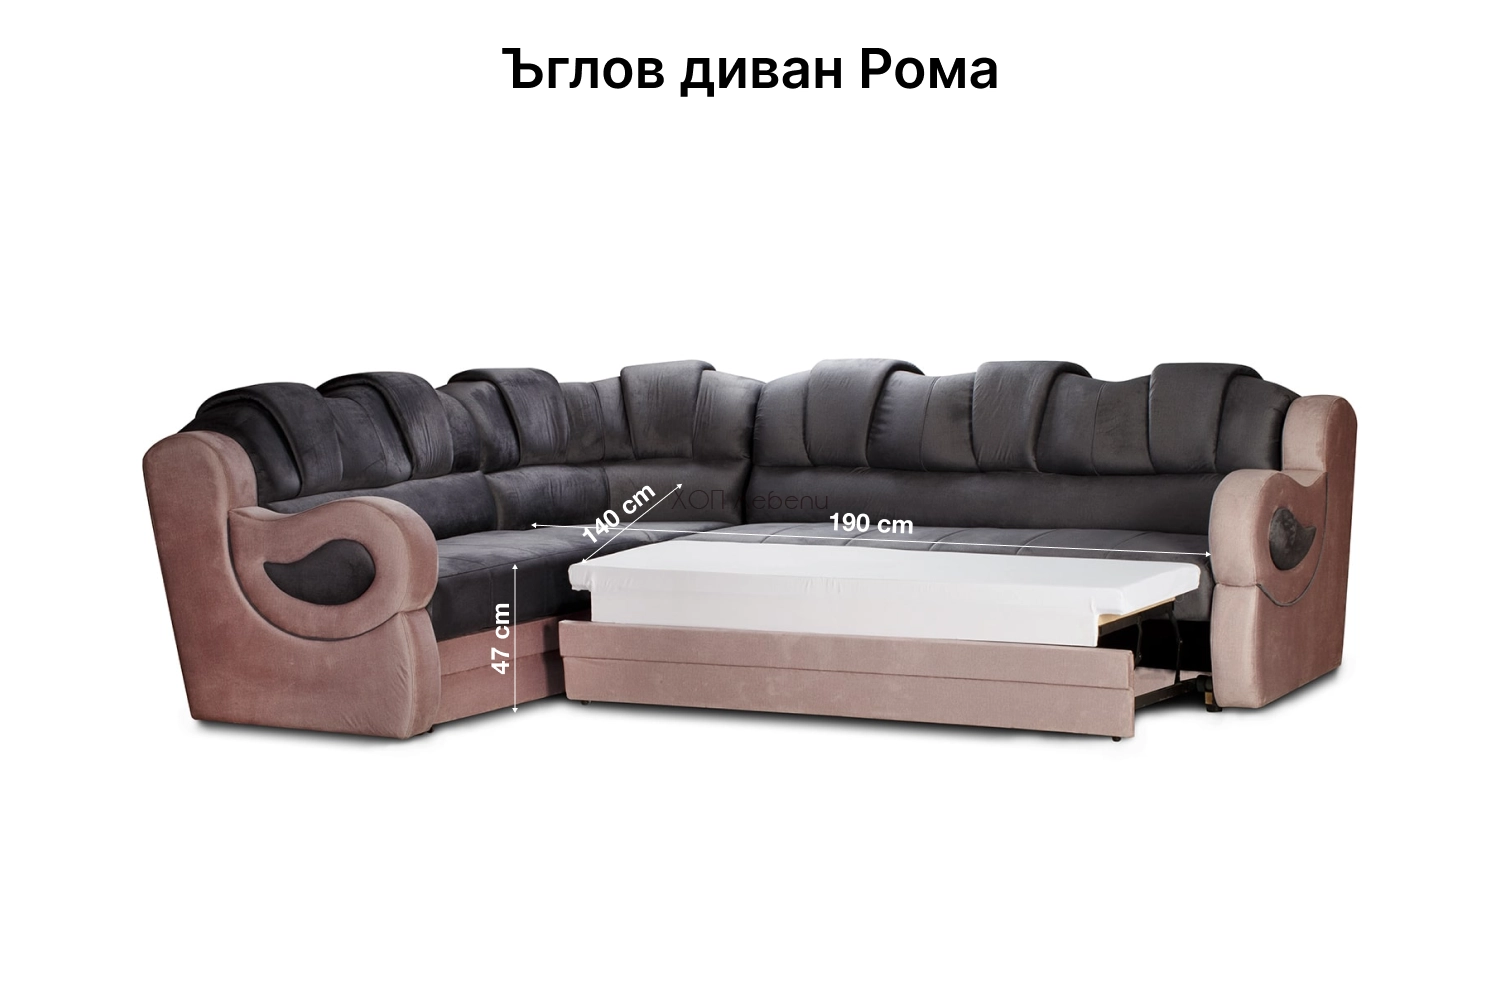 Размери на Ъглов диван Рома ID 3938 - 2